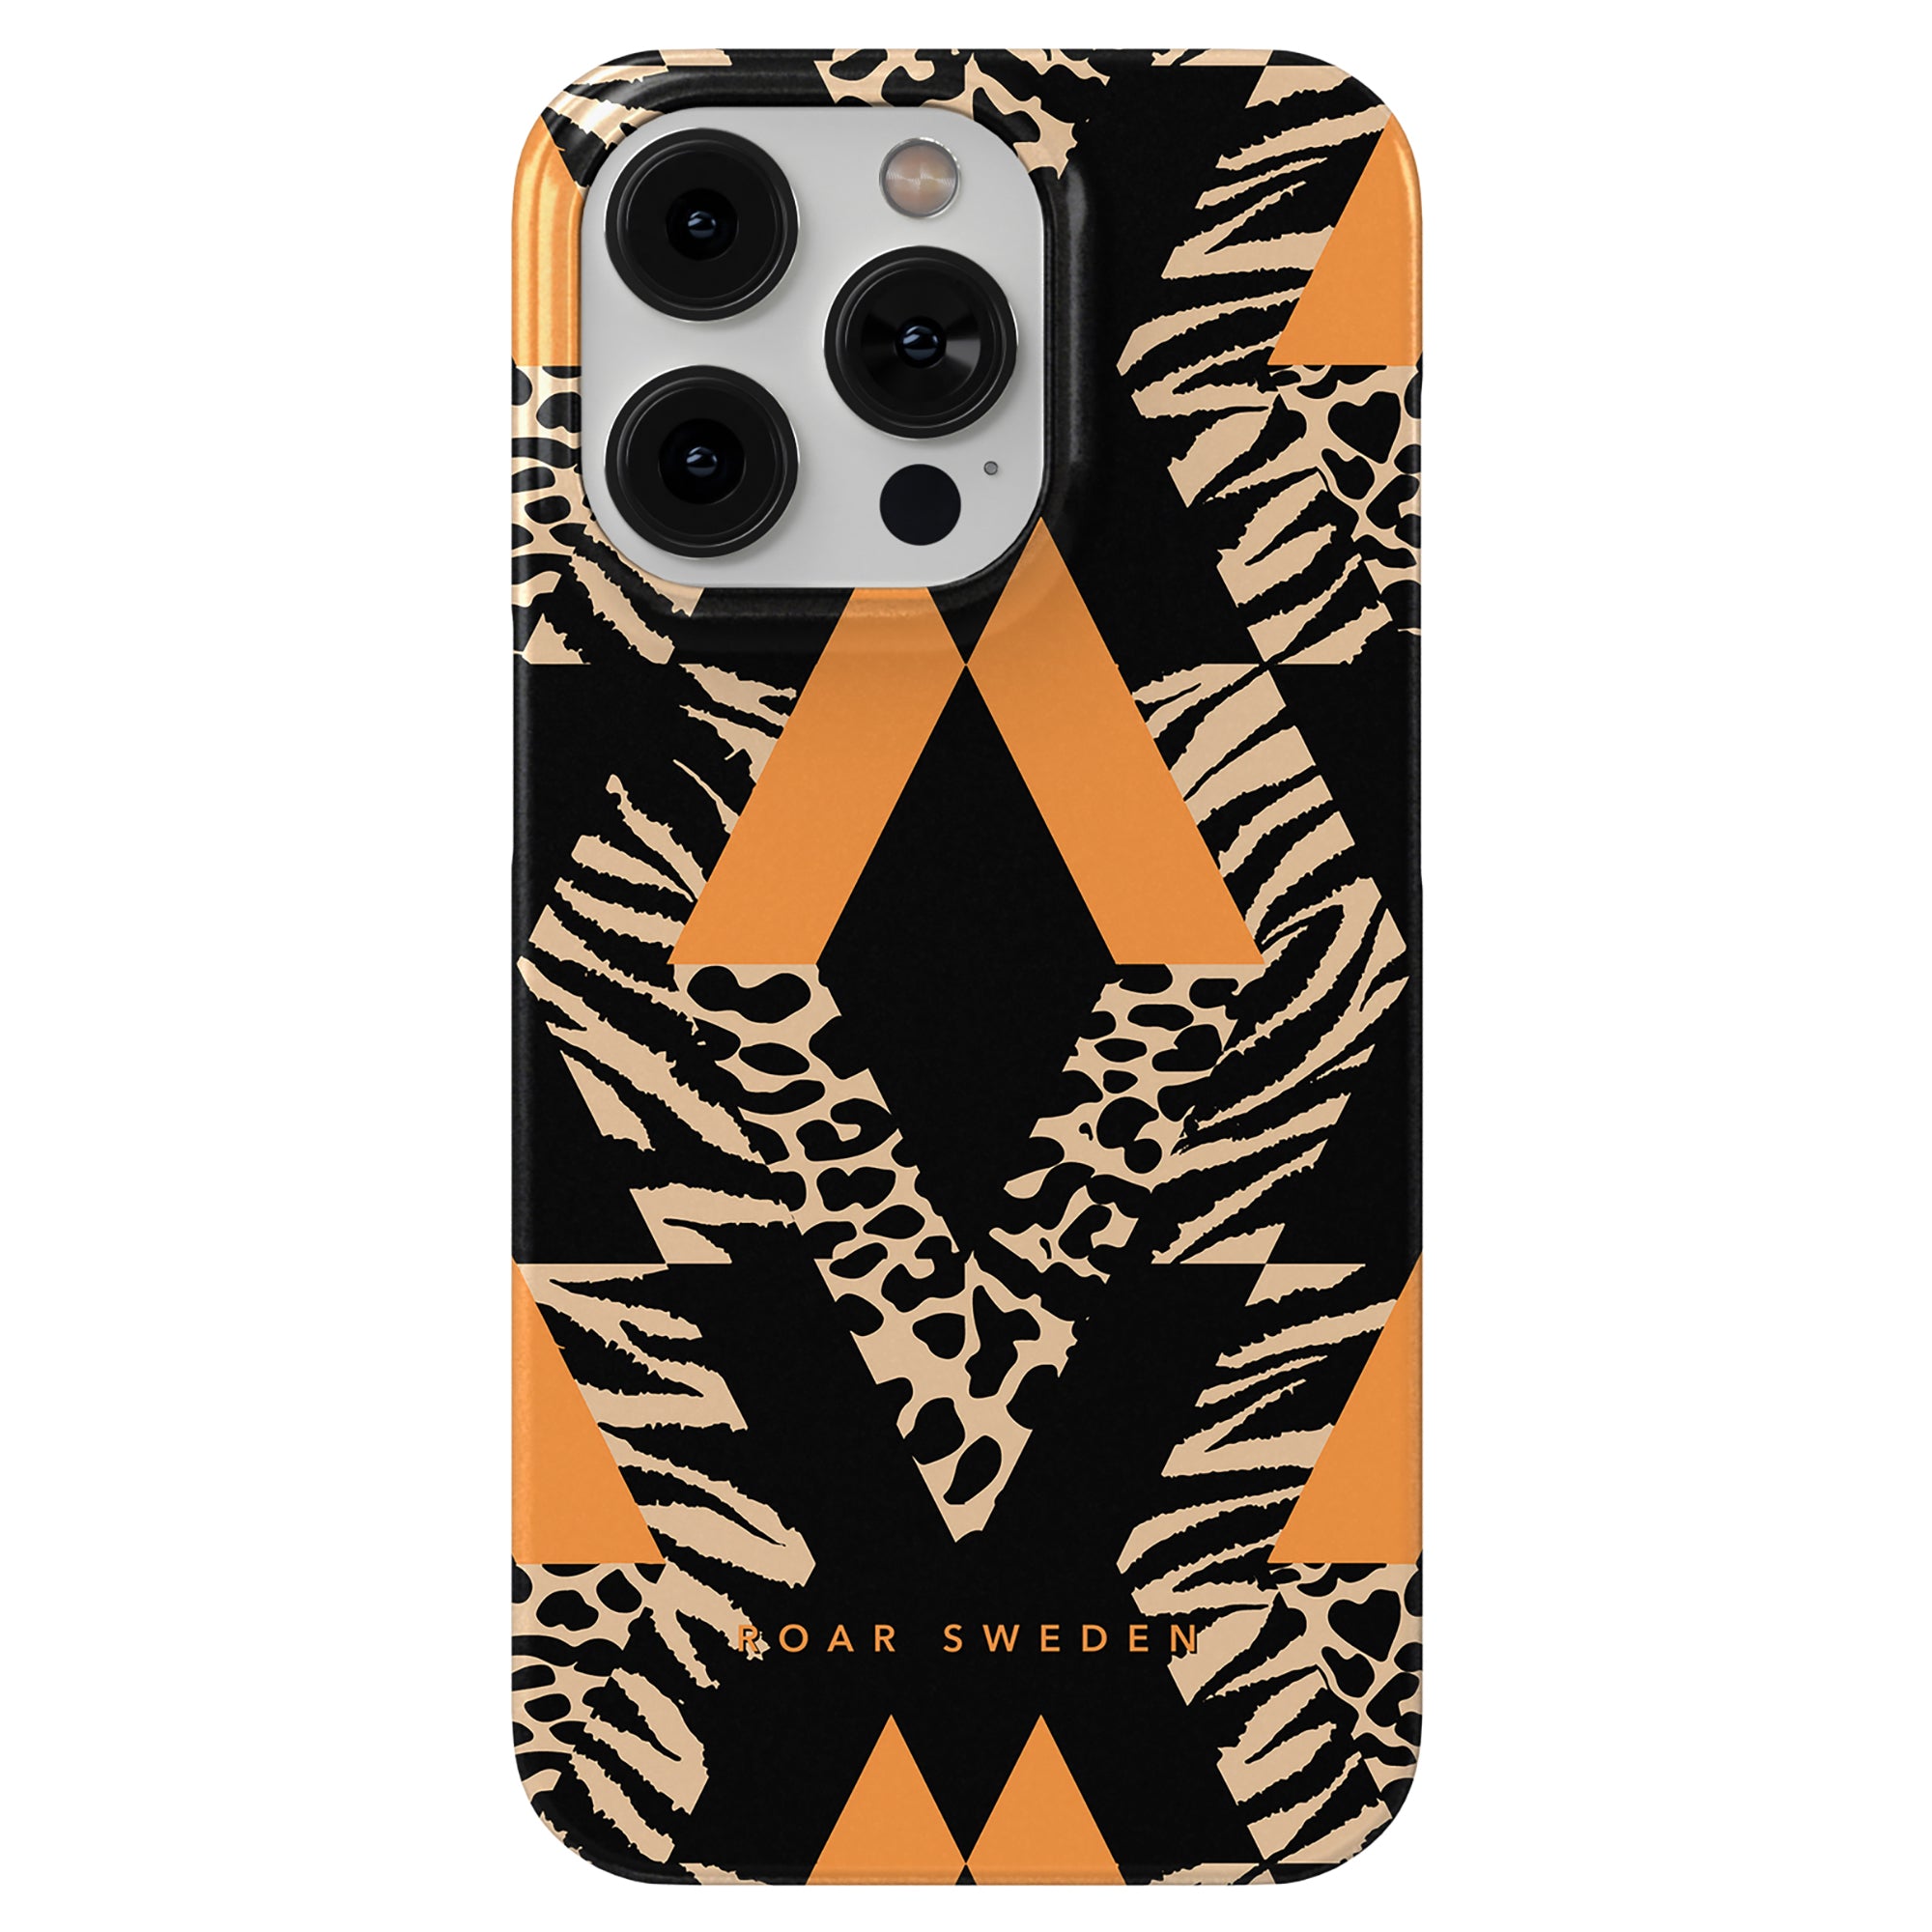 Ett robust Miami - Slim fodral med en sofistikerad orange och svart zebra-design för iPhone 11.